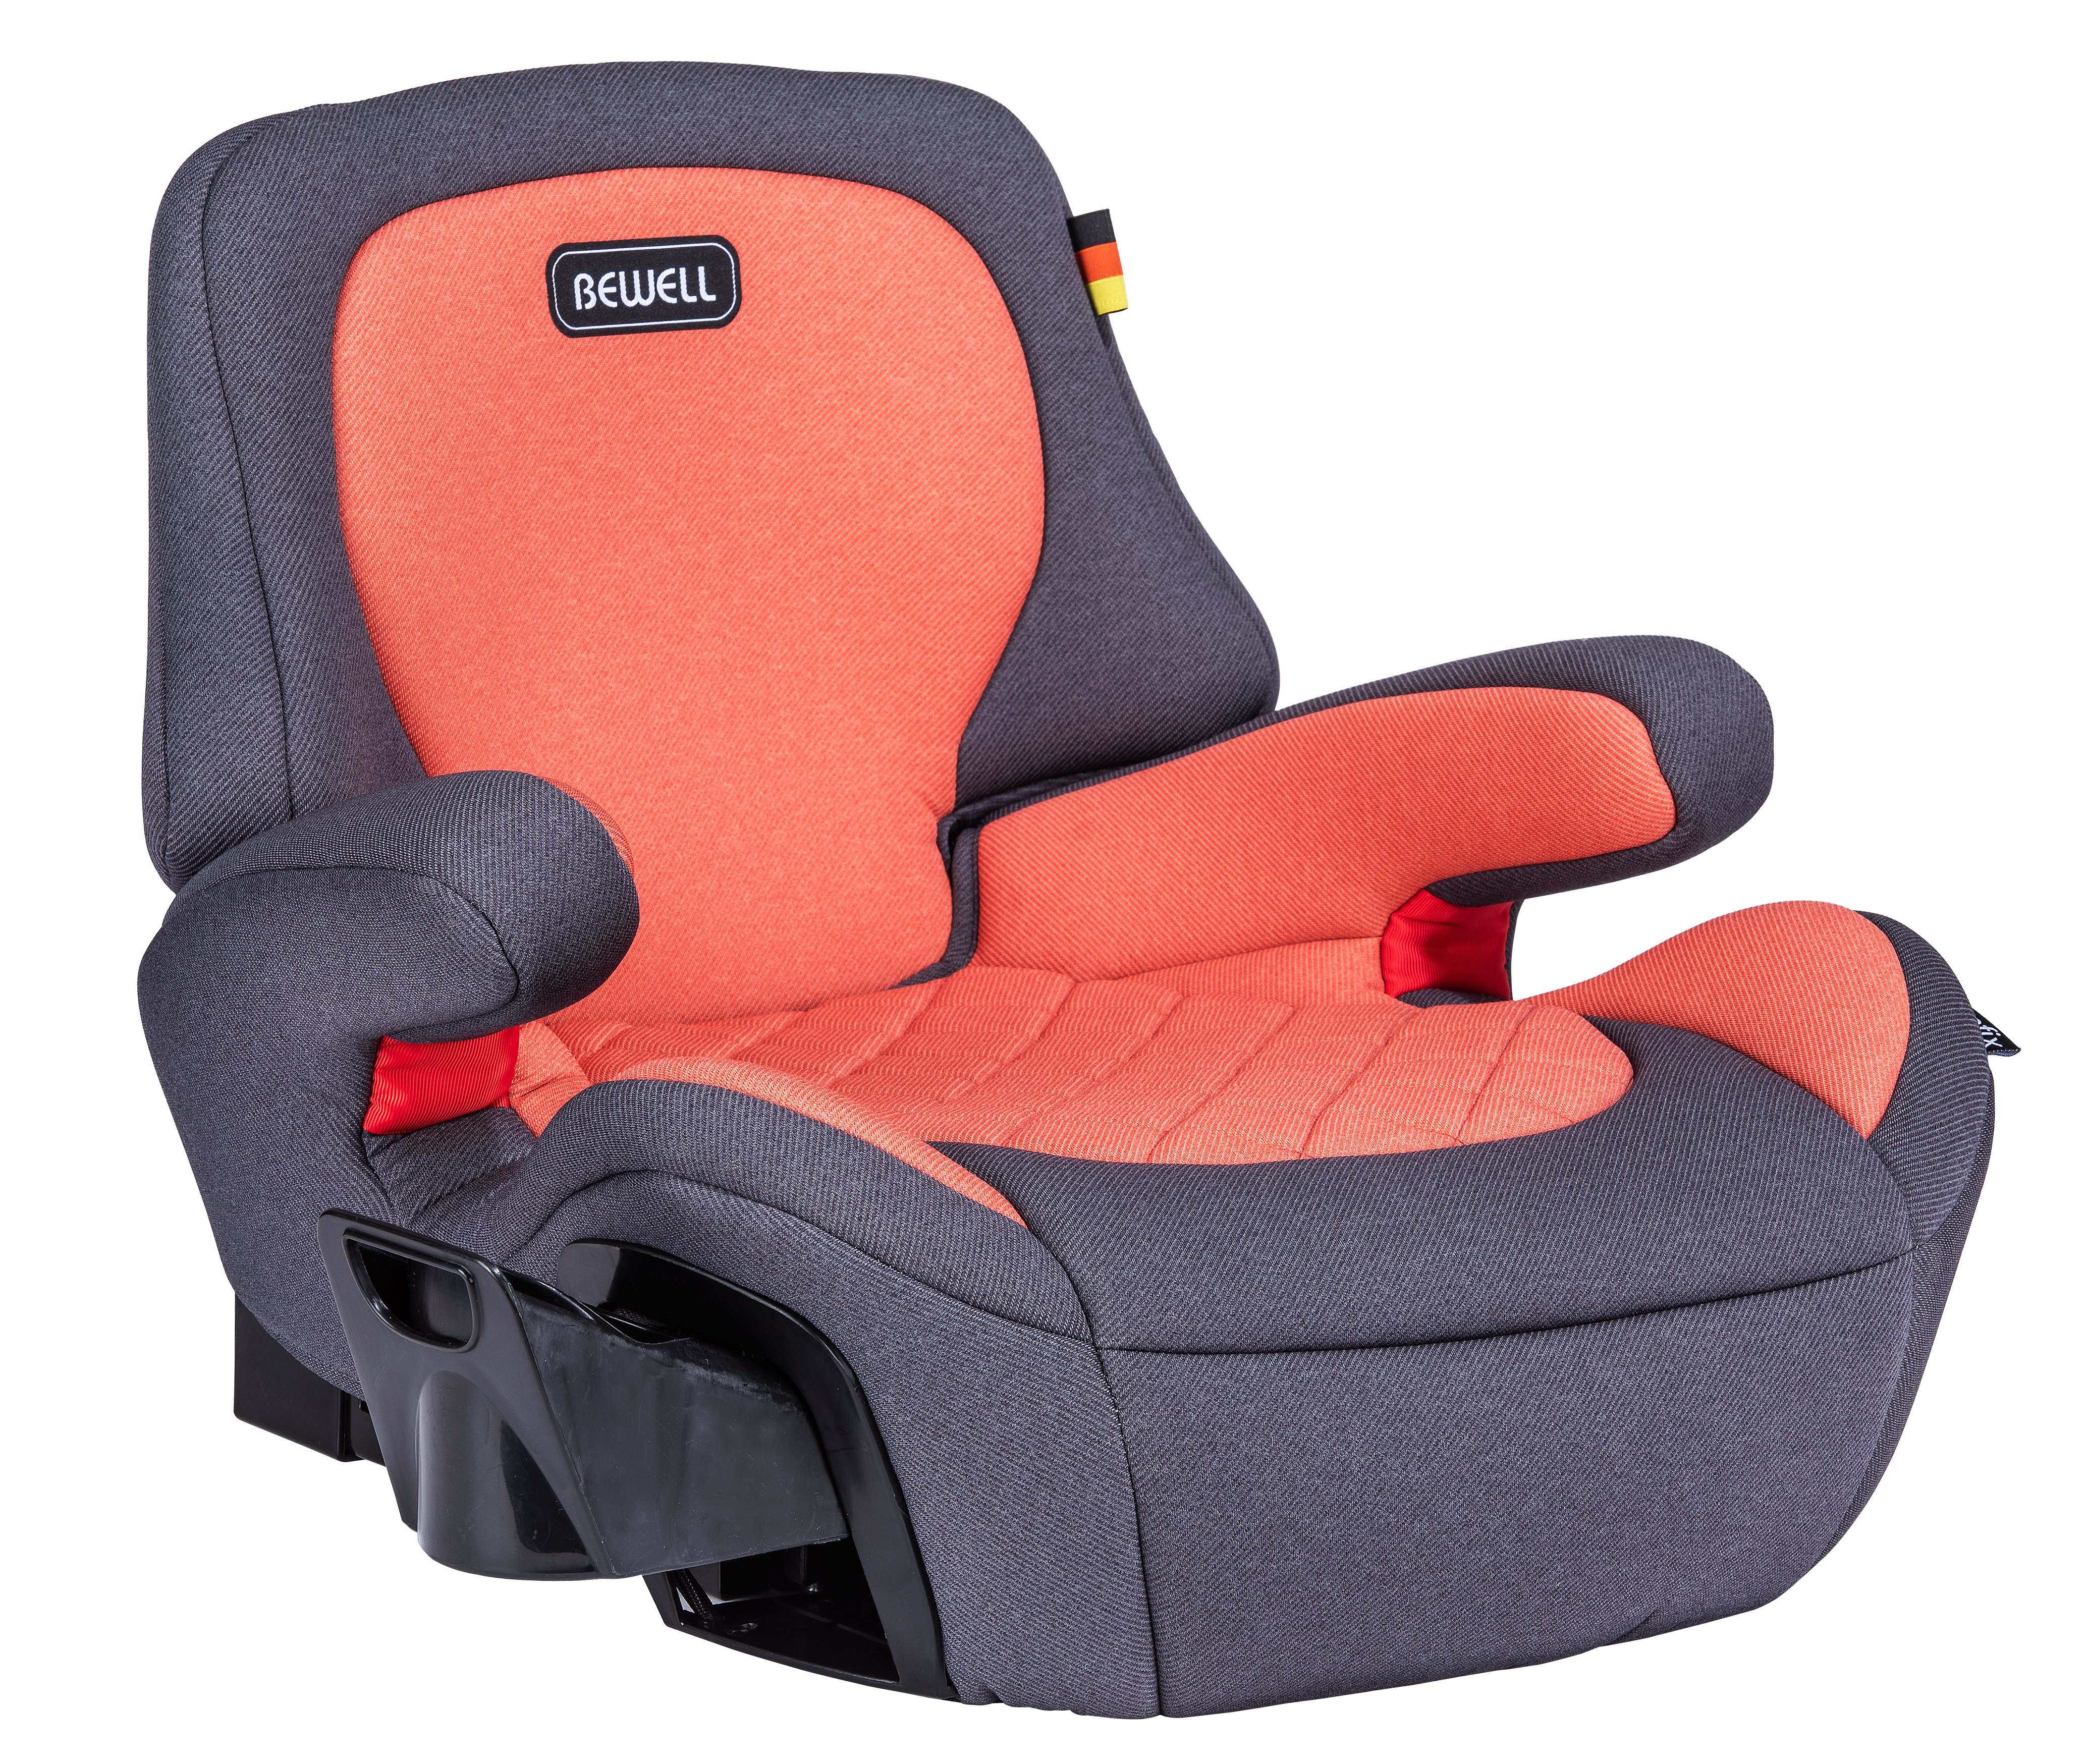 Neck Pillow Orange 4 Years Old Baby Car Seat